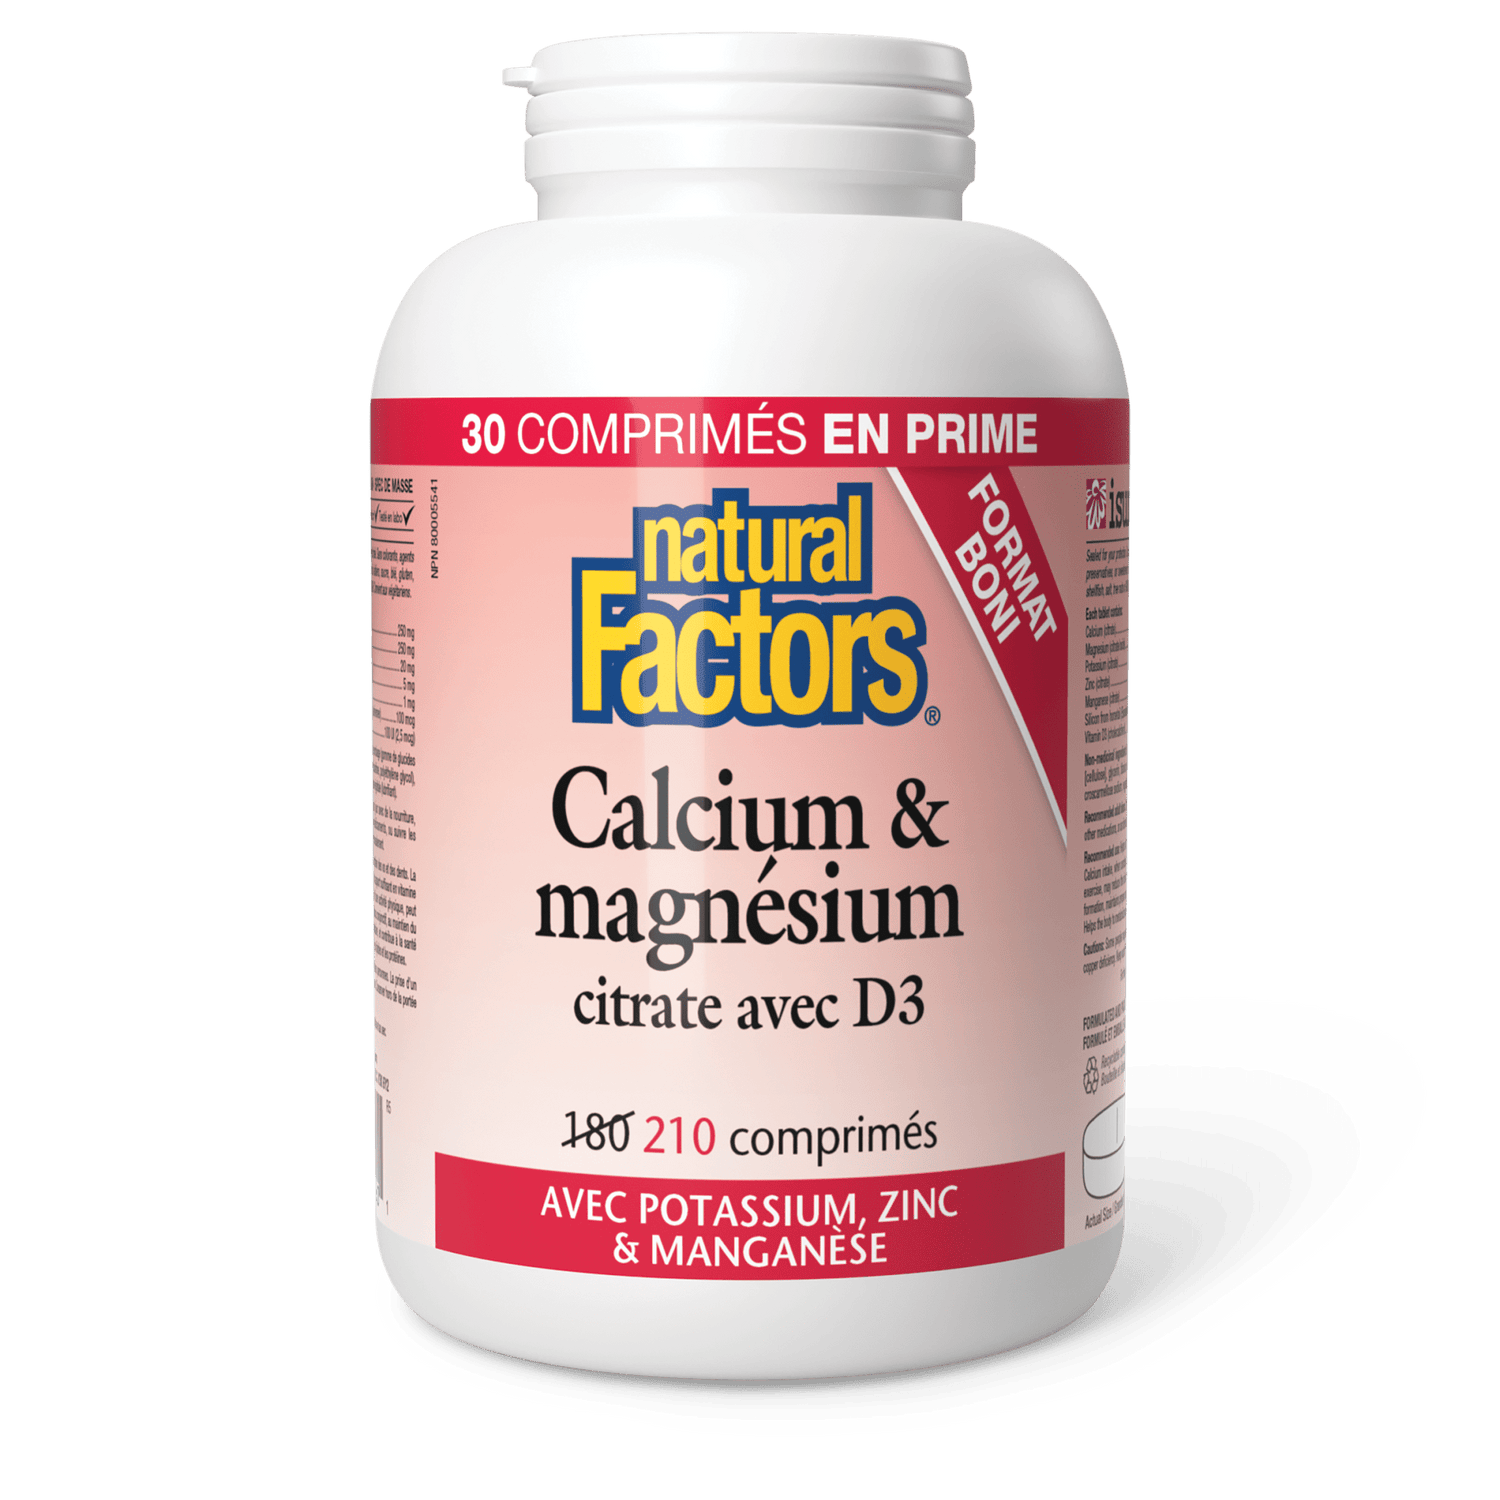 Calcium & magnésium citrate avec D3 avec potassium, zinc & manganèse, Natural Factors|v|image|8160